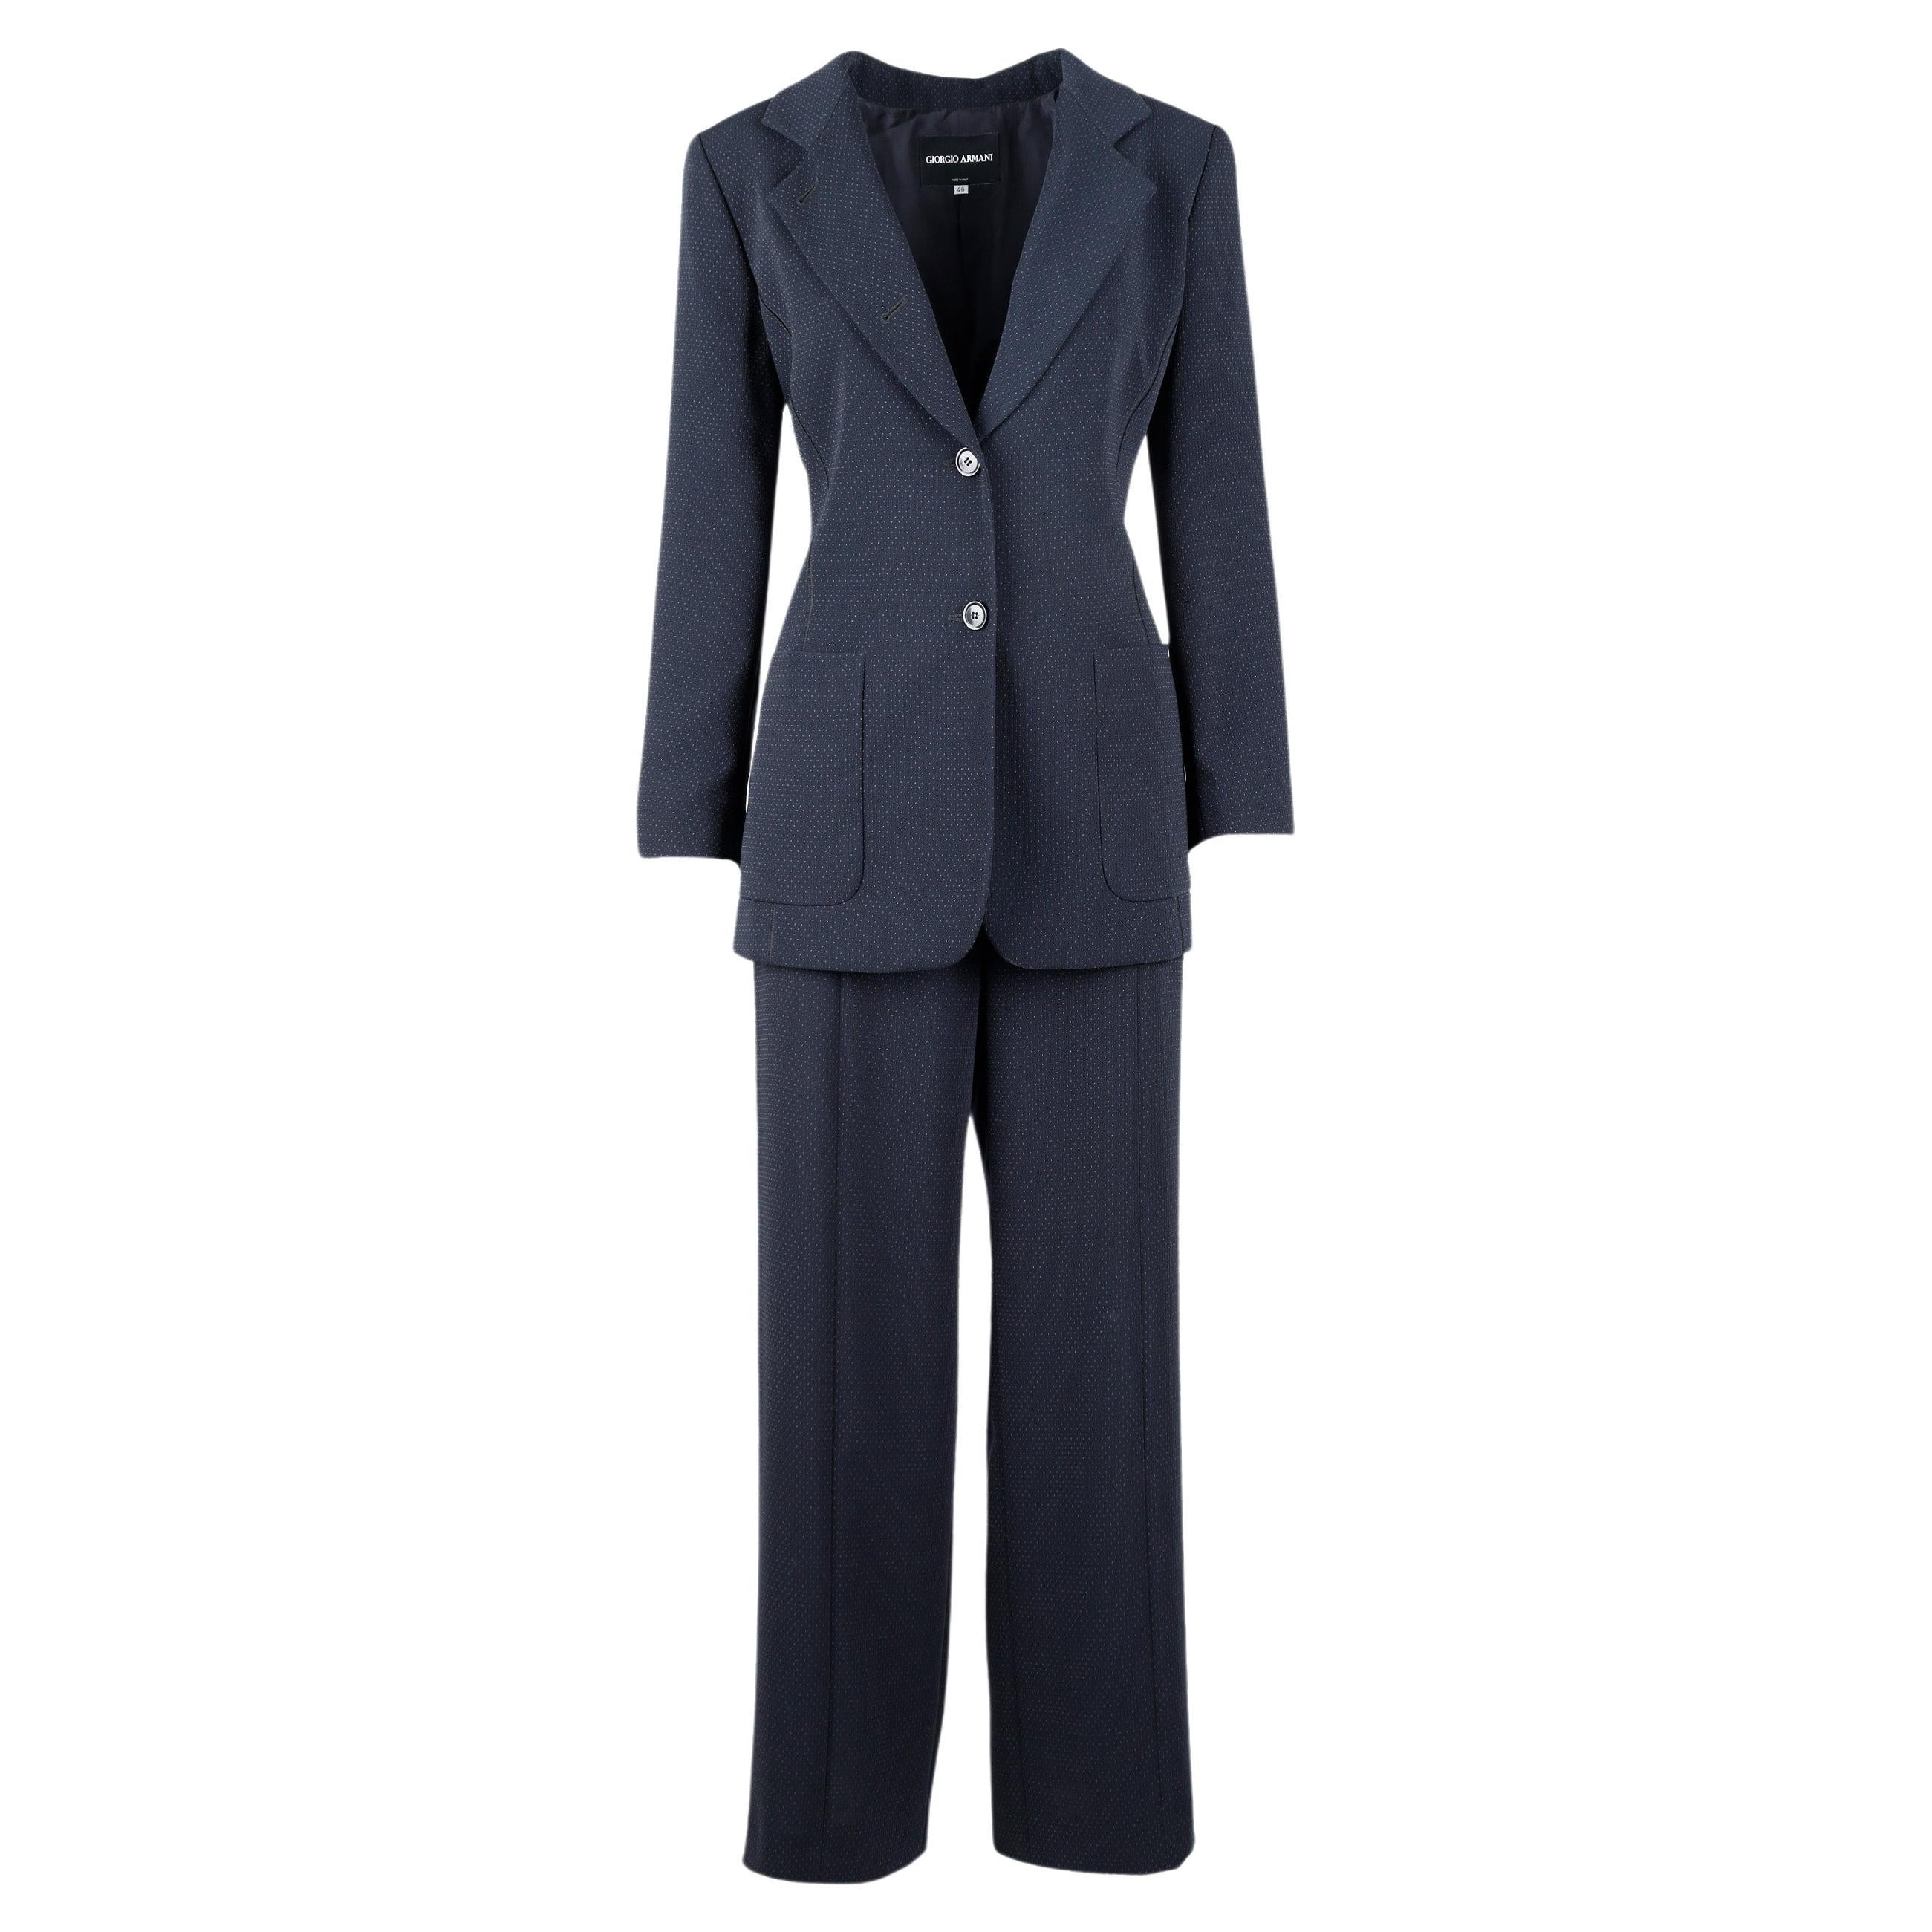 Giorgio Armani Borgo 21 Suit For Sale